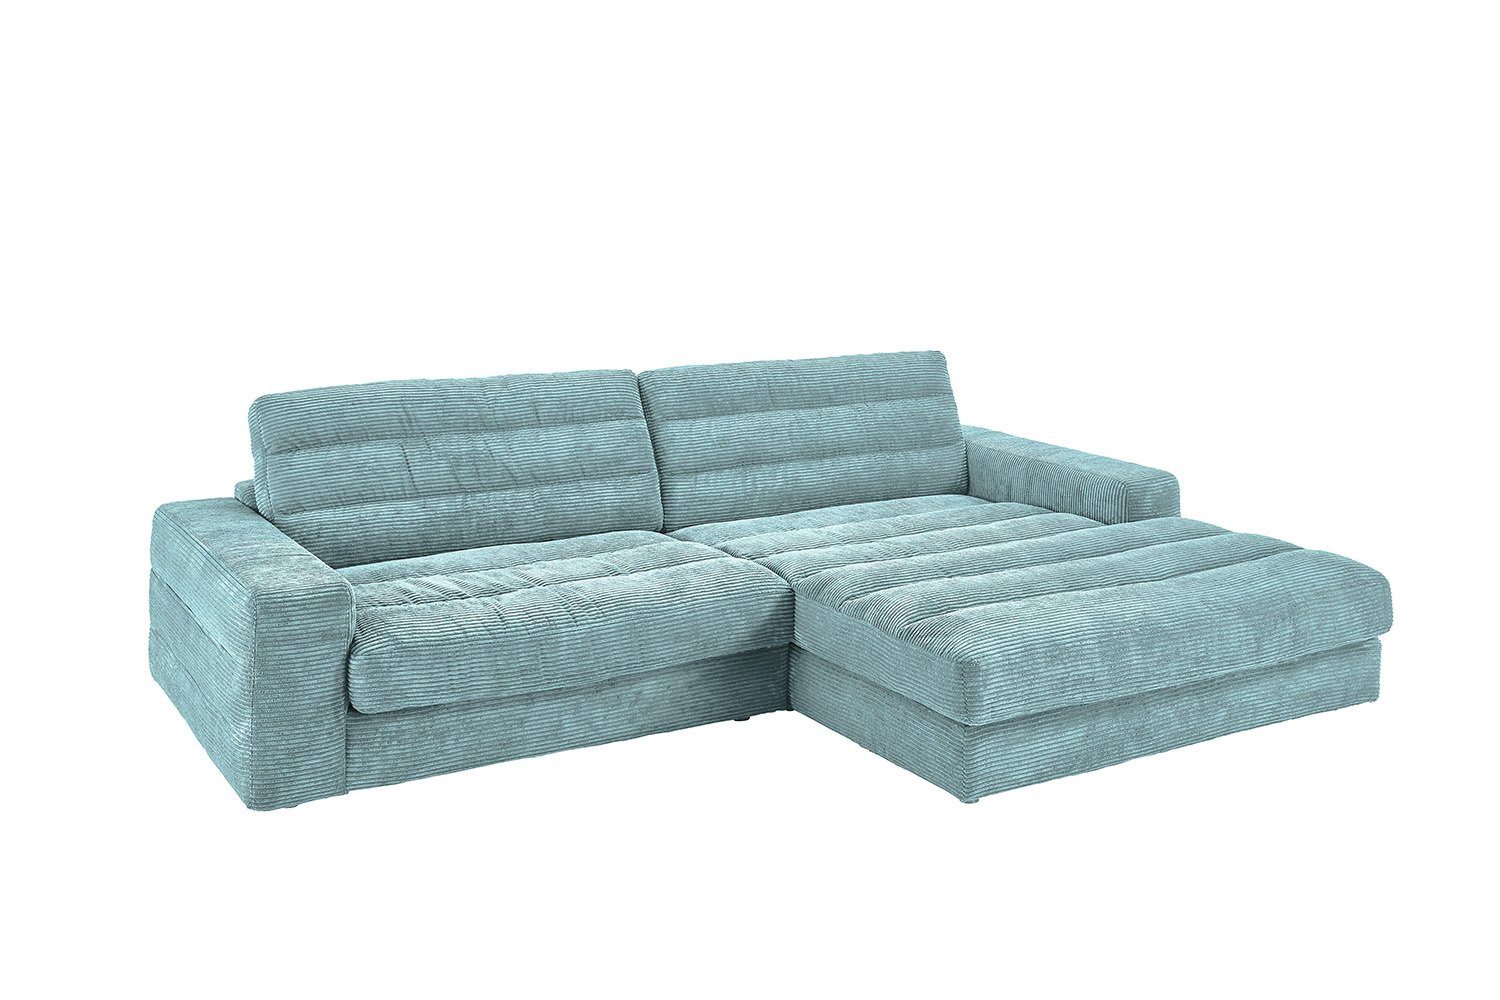 KAWOLA Ecksofa LANA, links rechts Farben od. Sofa versch. Größen Cord hellblau Recamiere versch. und